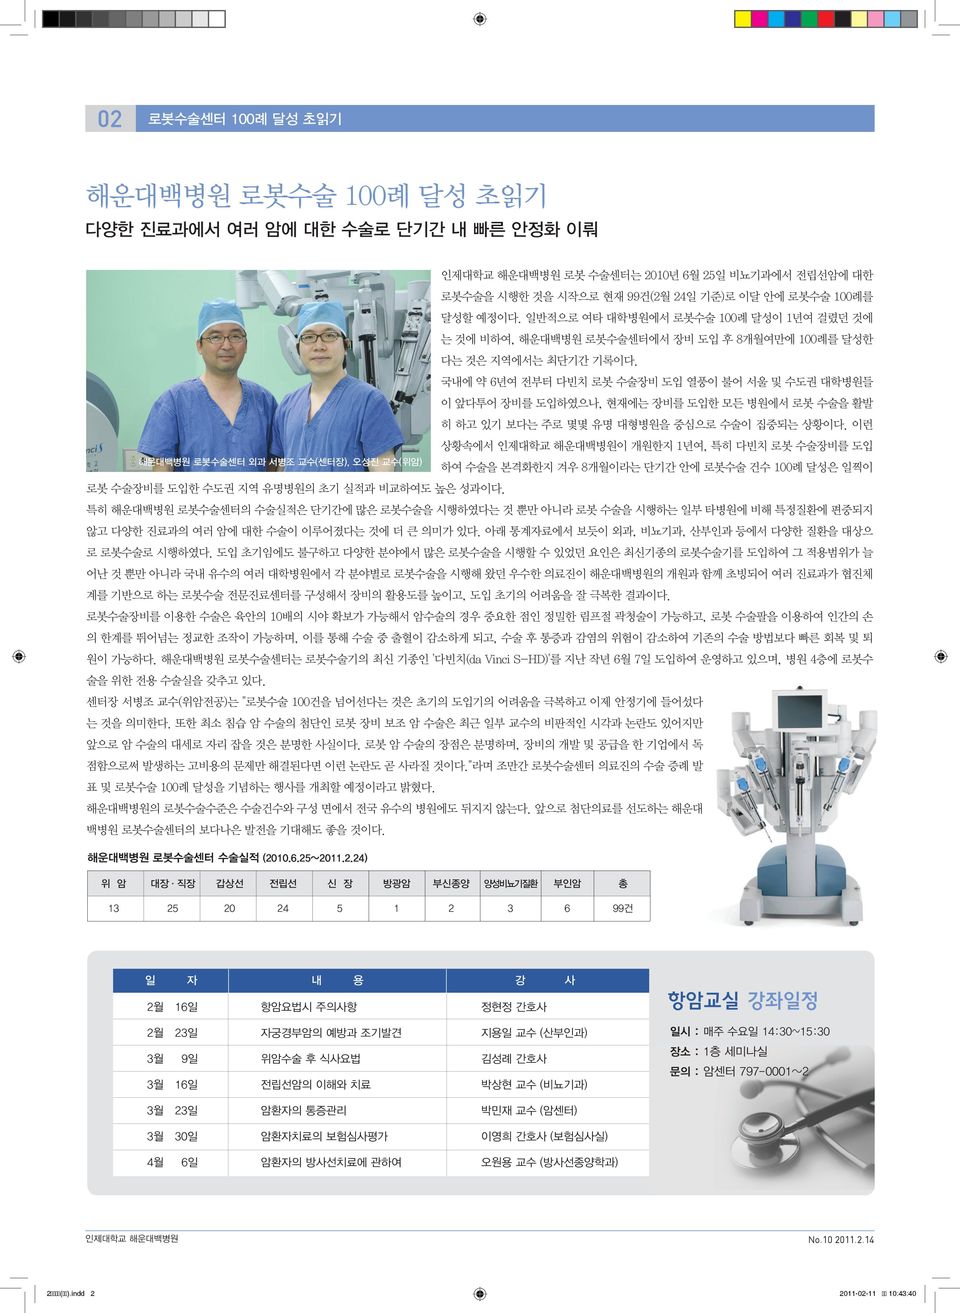 국내에 약 6년여 전부터 다빈치 로봇 수술장비 도입 열풍이 불어 서울 및 수도권 대학병원들 이 앞다투어 장비를 도입하였으나, 현재에는 장비를 도입한 모든 병원에서 로봇 수술을 활발 히 하고 있기 보다는 주로 몇몇 유명 대형병원을 중심으로 수술이 집중되는 상황이다.